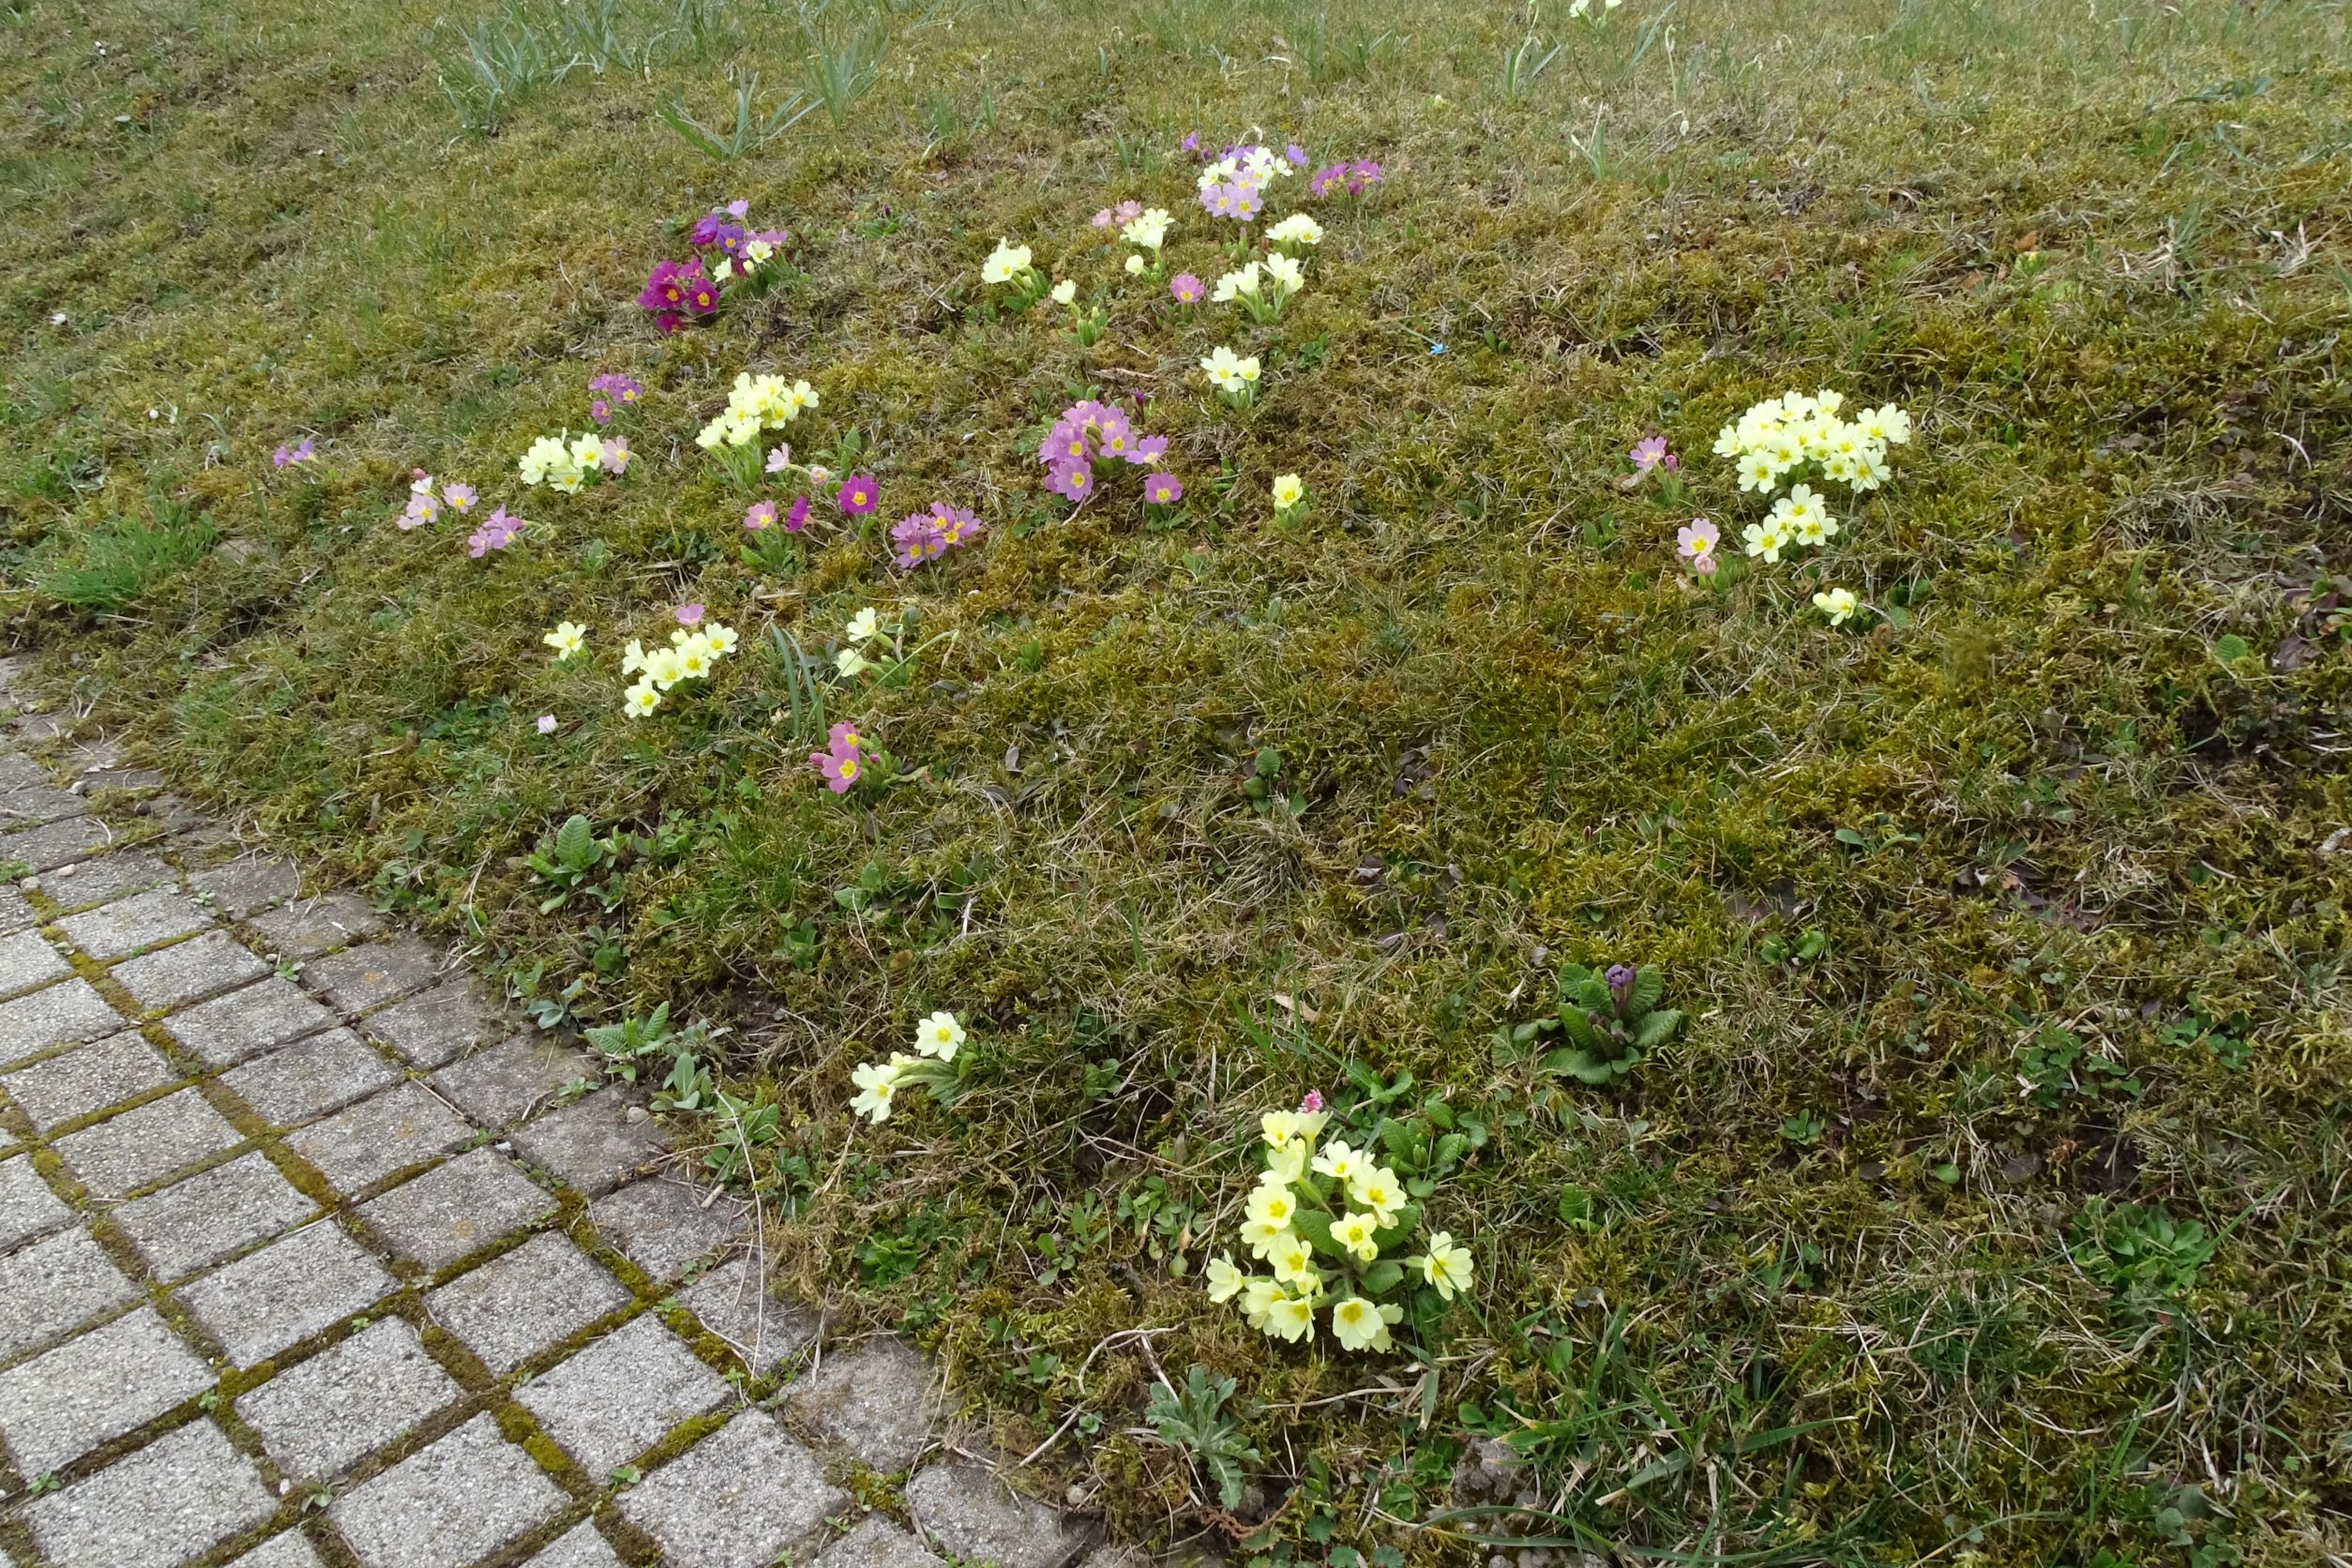 DSC02617 2022-04-02, Primula vulgaris-Siedlungs-Farbvarietäten, Friedhof Hainburg.JPG